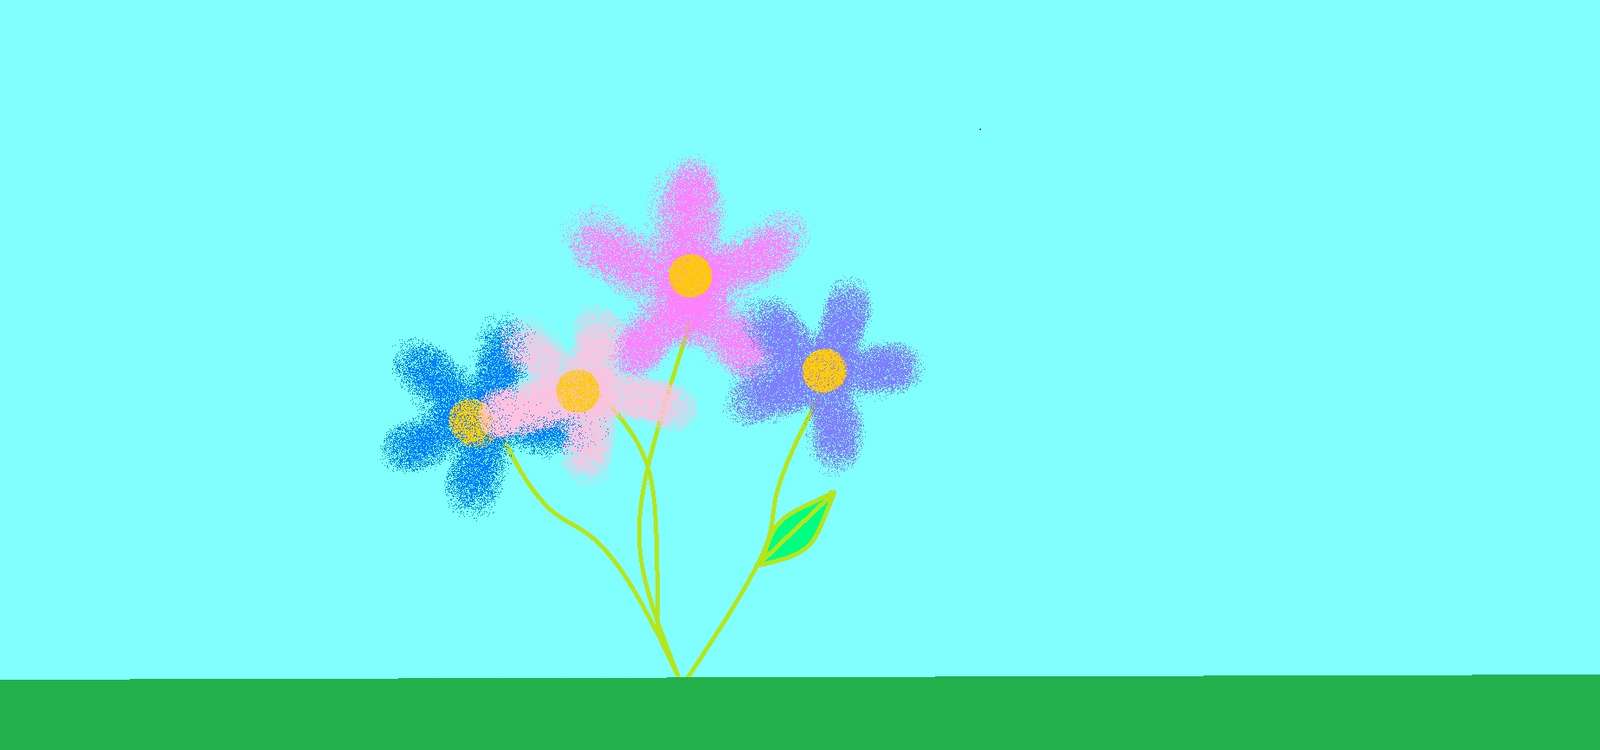 Agata's flowers online puzzle